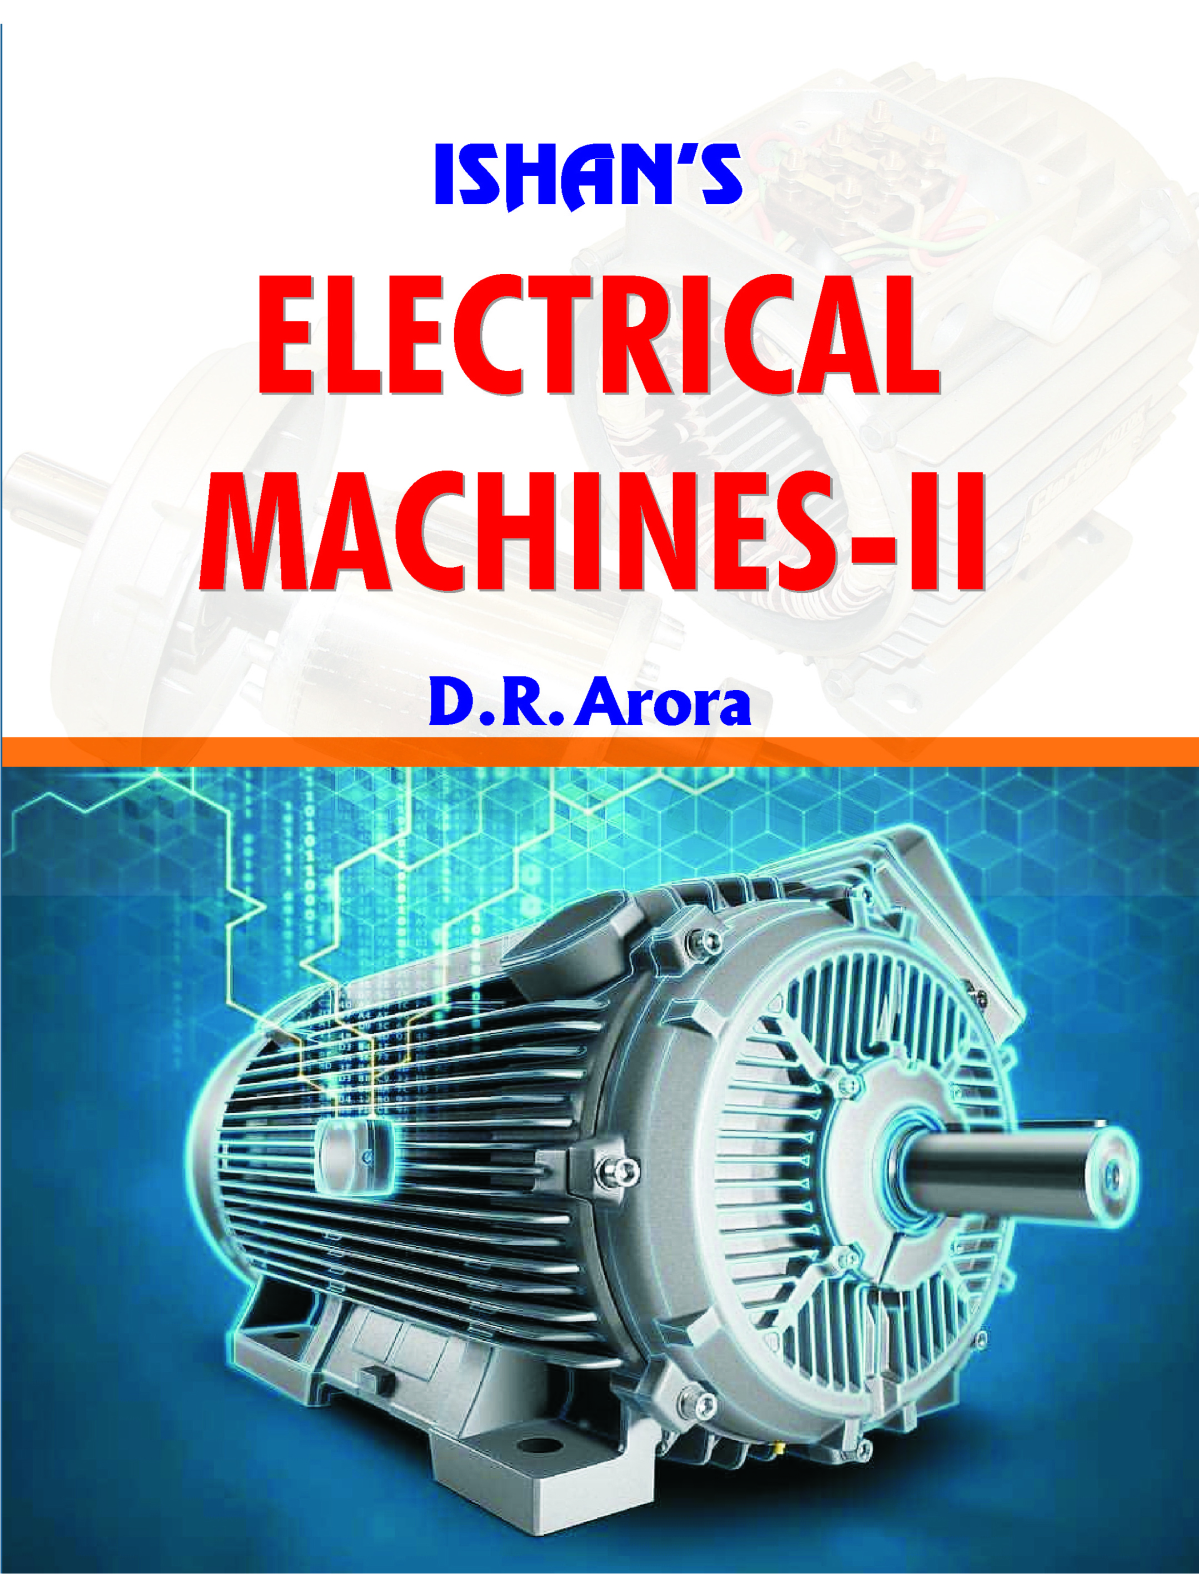 Electrical Machine - II